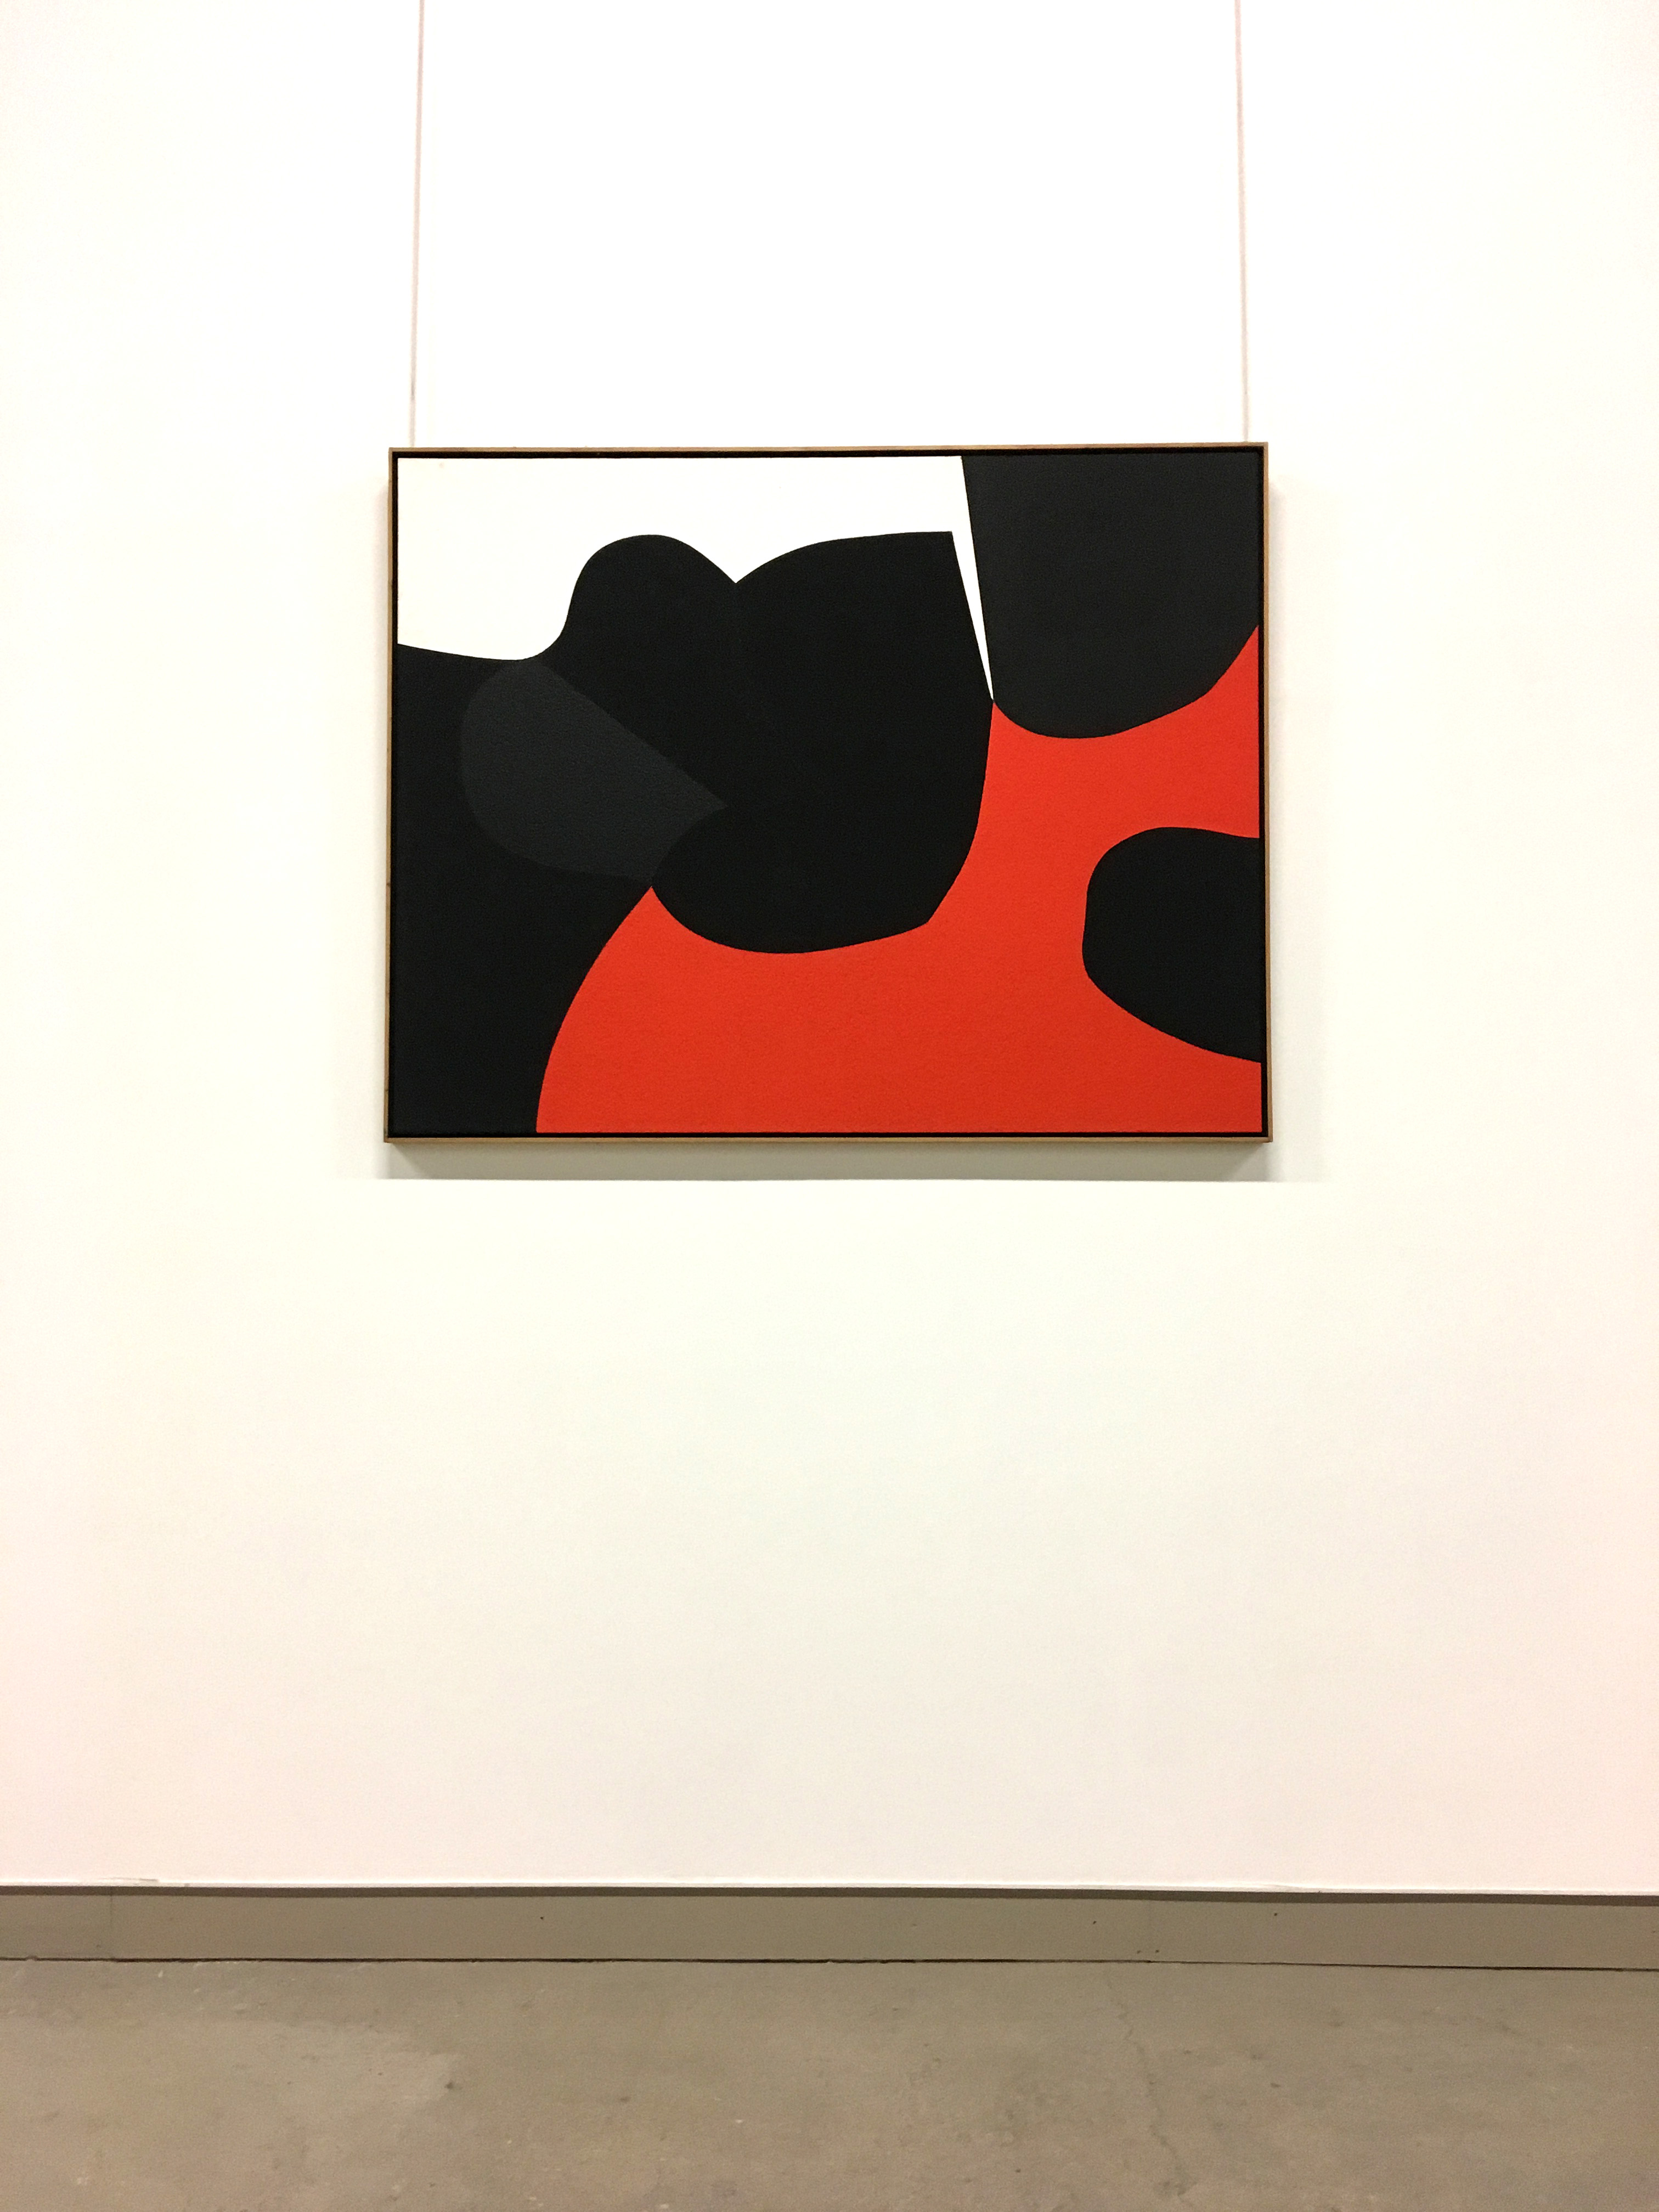 Black, red and white Alberto Burri artwork in fondazione burri ex seccatoi